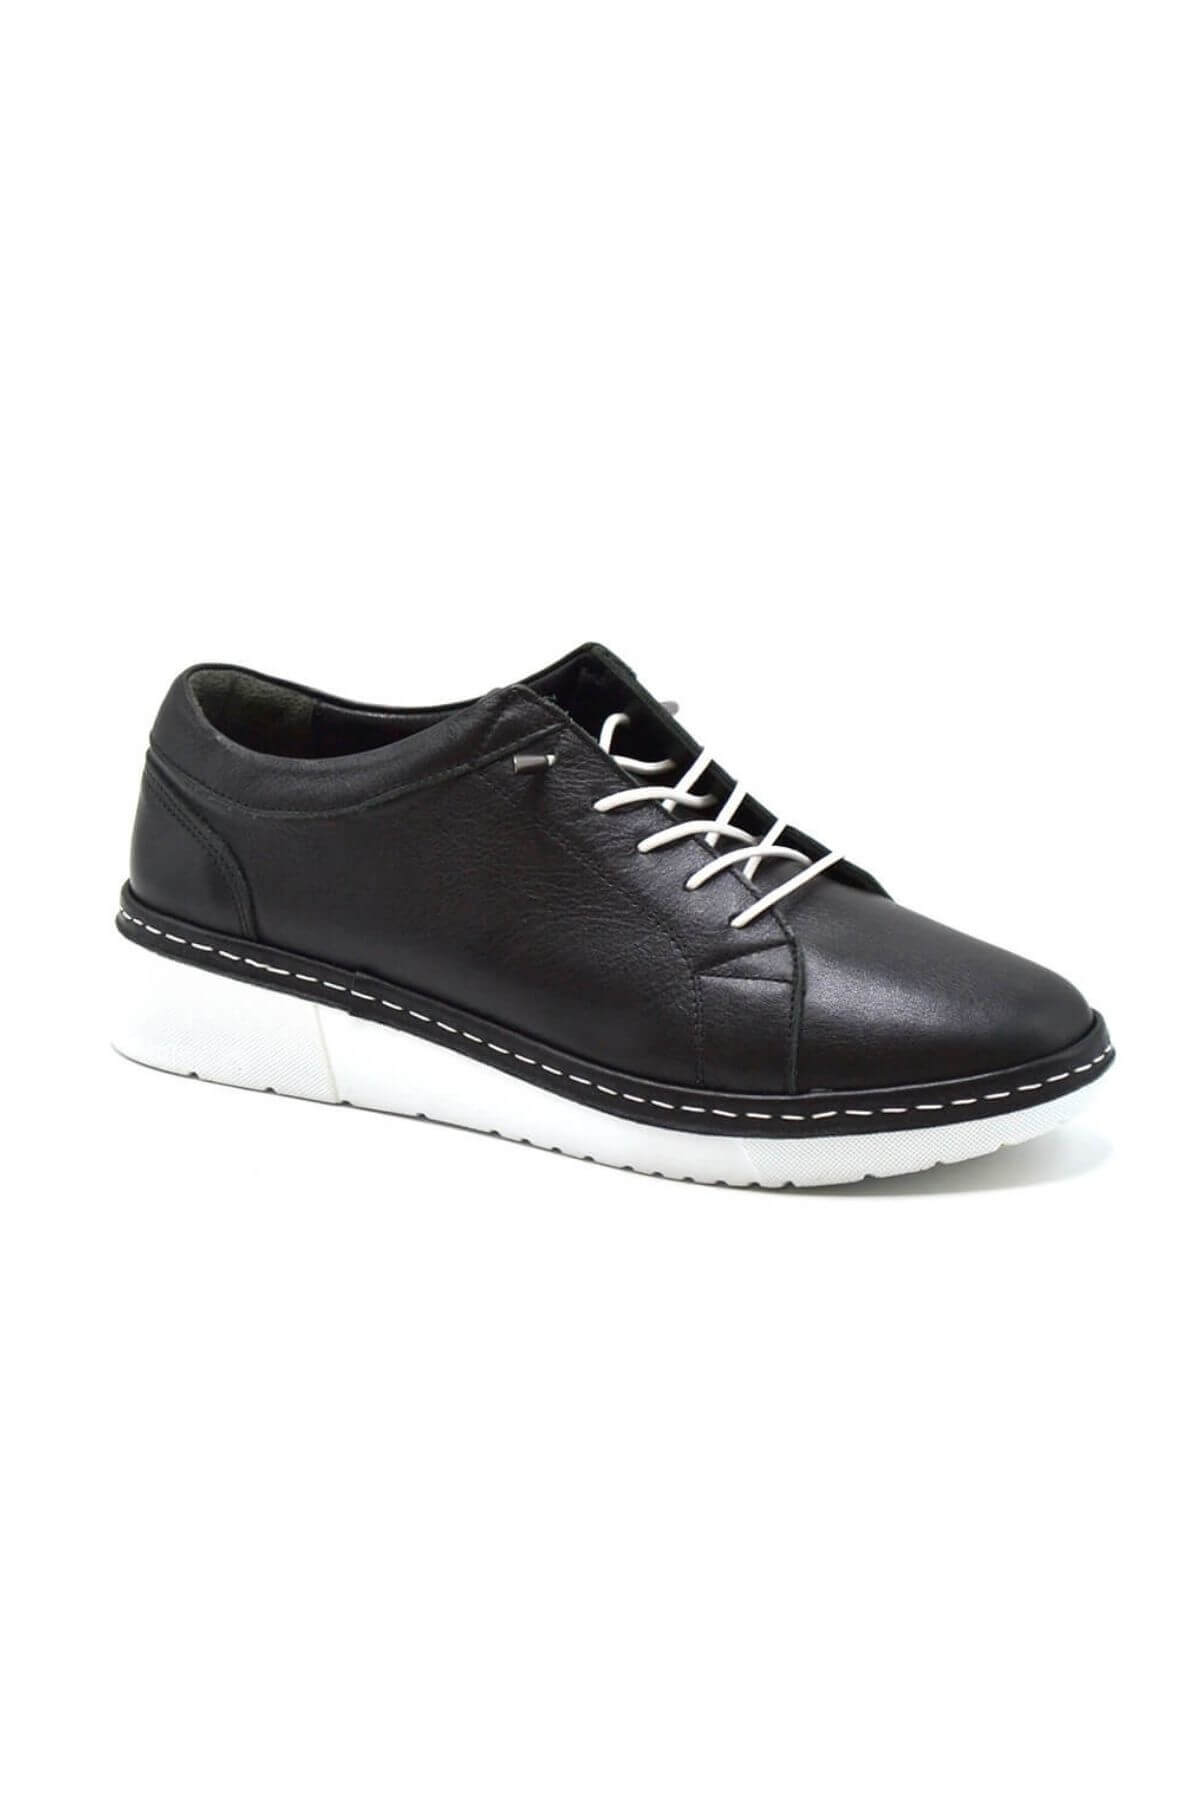 Kadın Comfort Deri Ayakkabı Siyah 23150003Y - Thumbnail